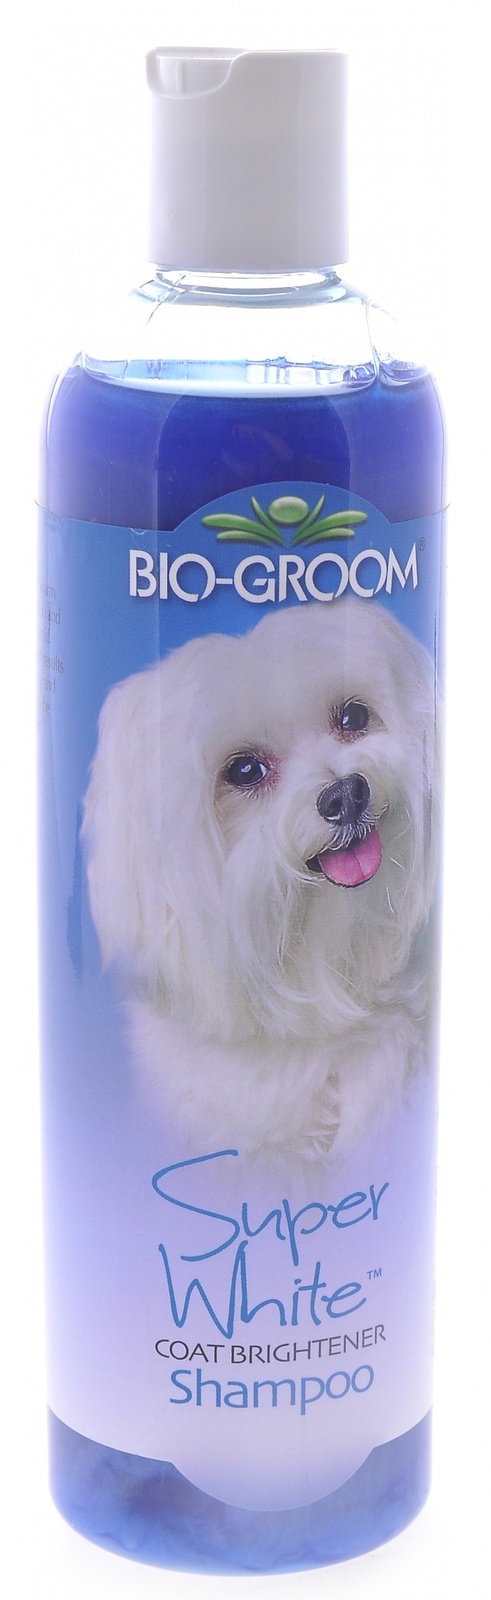 Biogroom Biogroom шампунь Супер Белый, концентрация 1:8, 3.2 литра готового шампуня (355 г) biogroom biogroom шампунь без смывания waterless bath 473 г